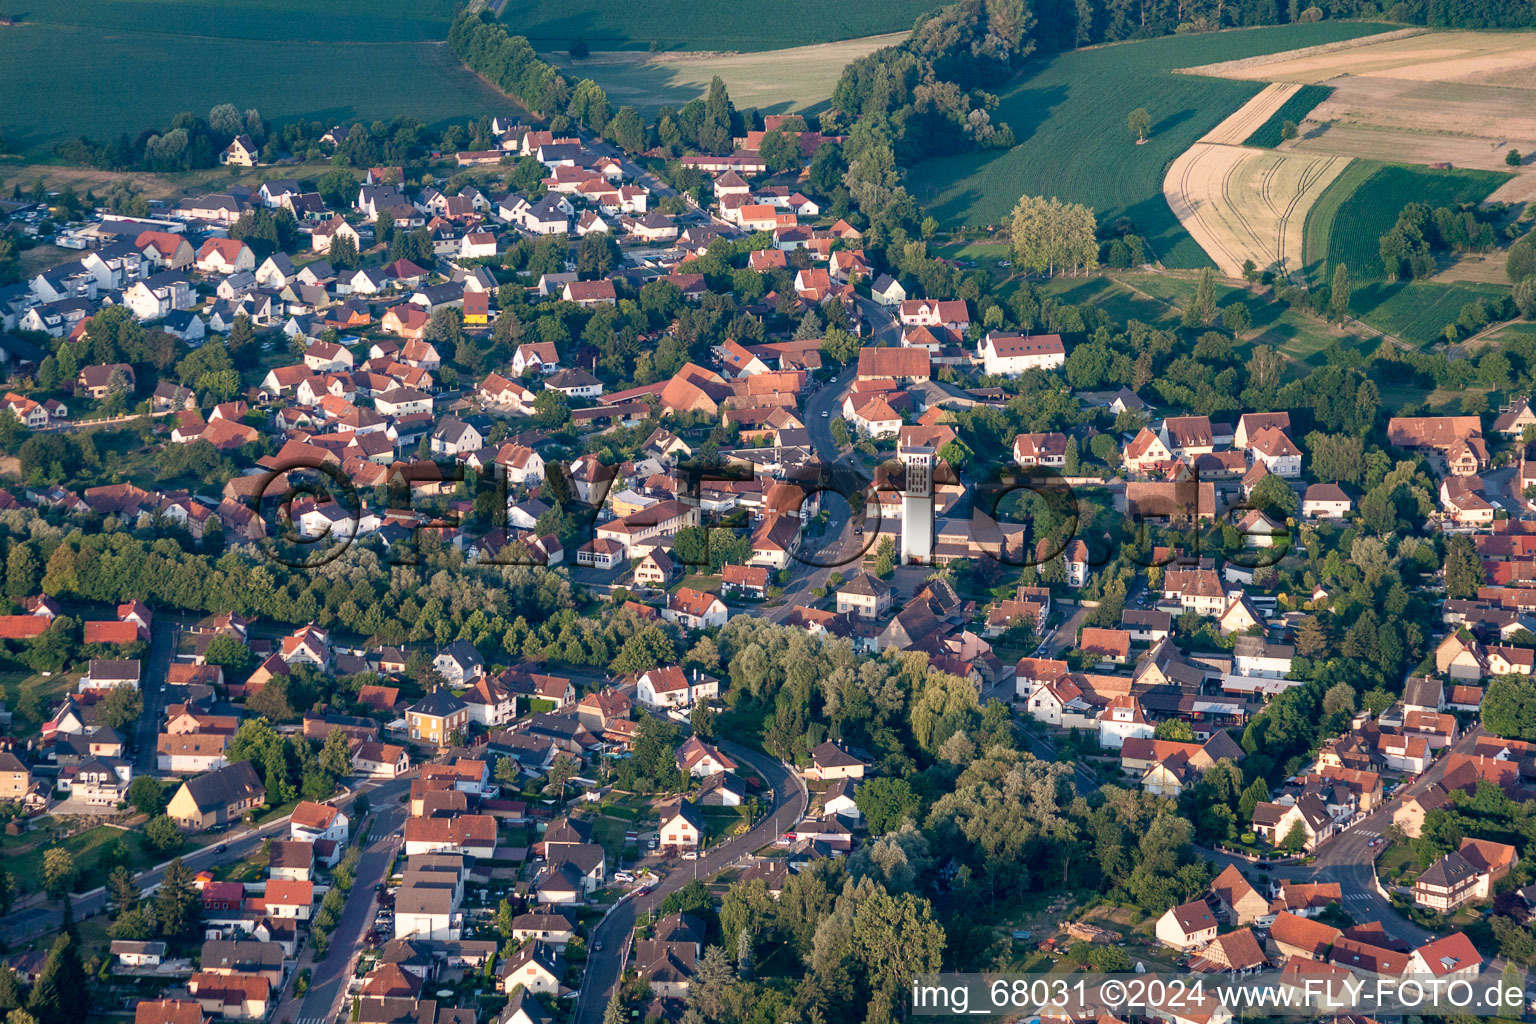 Vue aérienne de Bâtiment d'église au centre du village à Offendorf dans le département Bas Rhin, France